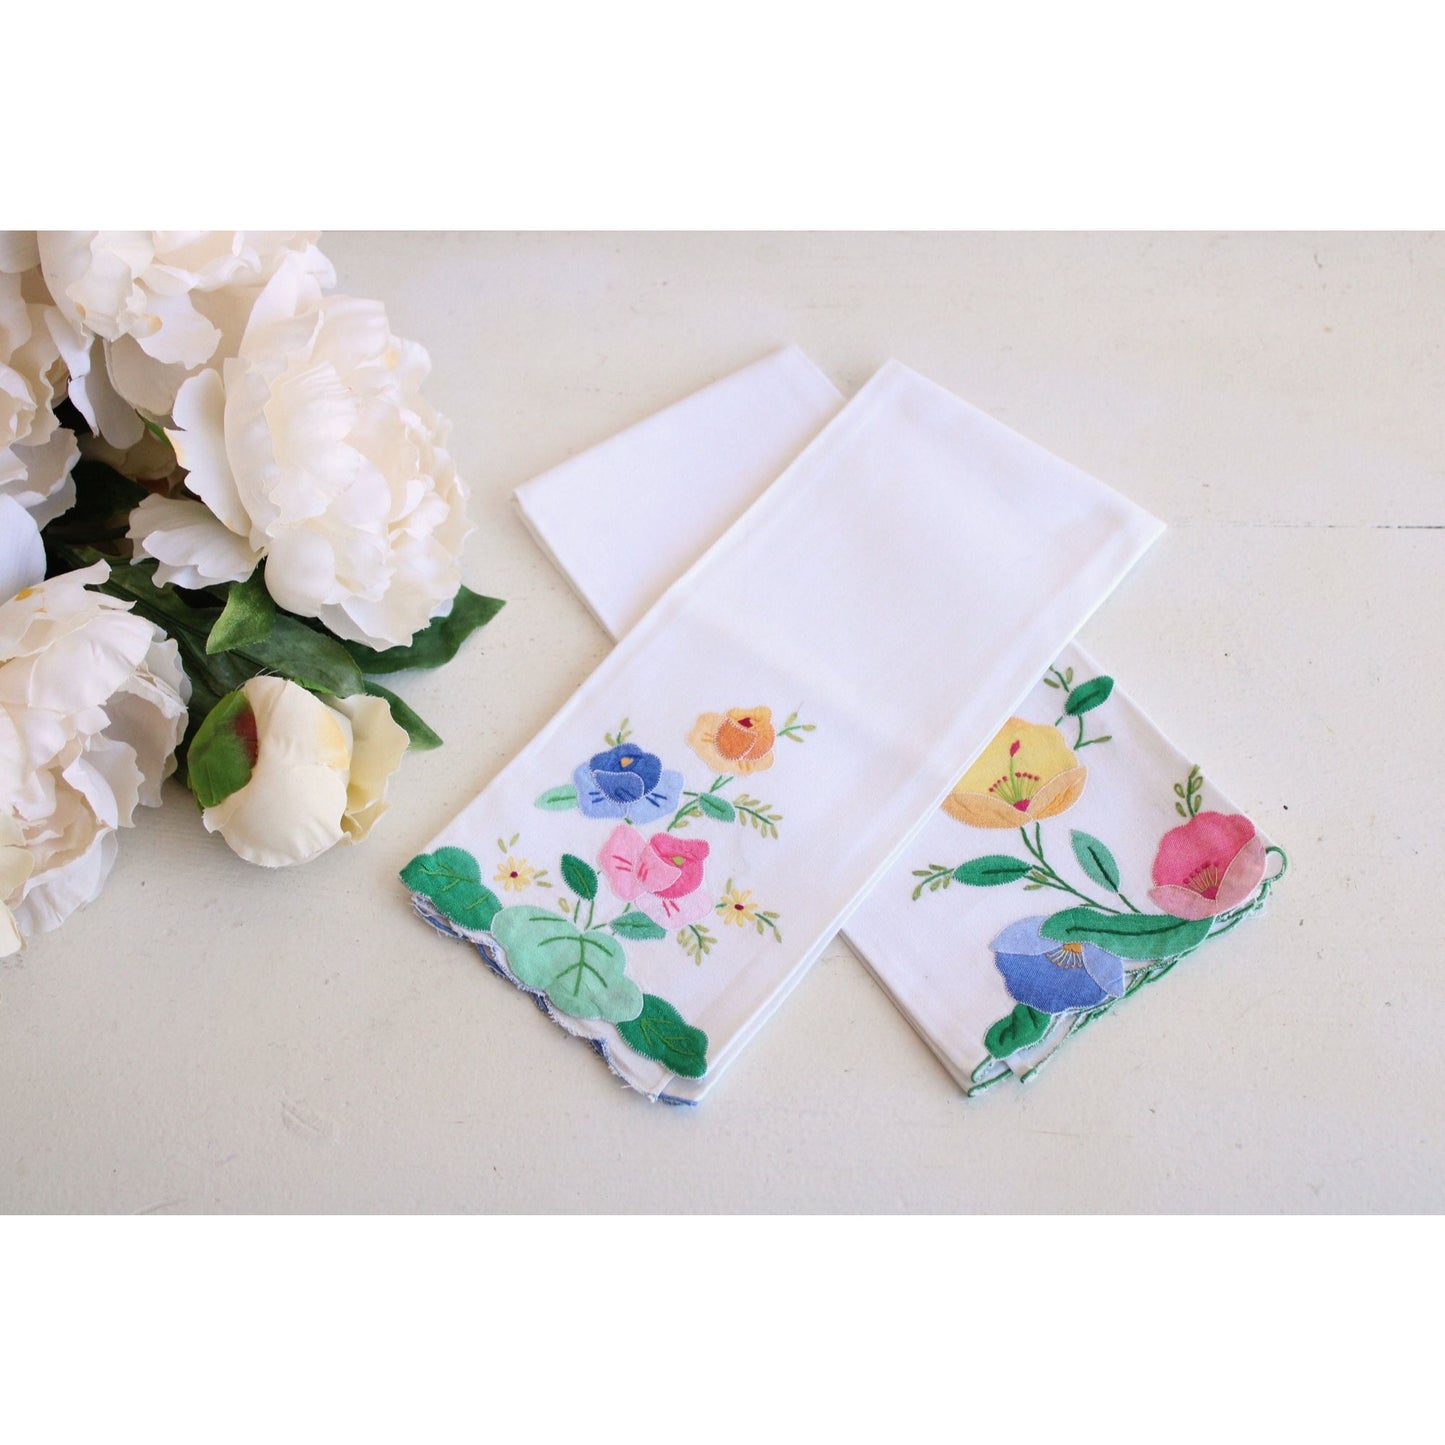 Vintage 1980s Tea Towel Pair With Cutwork Flowers